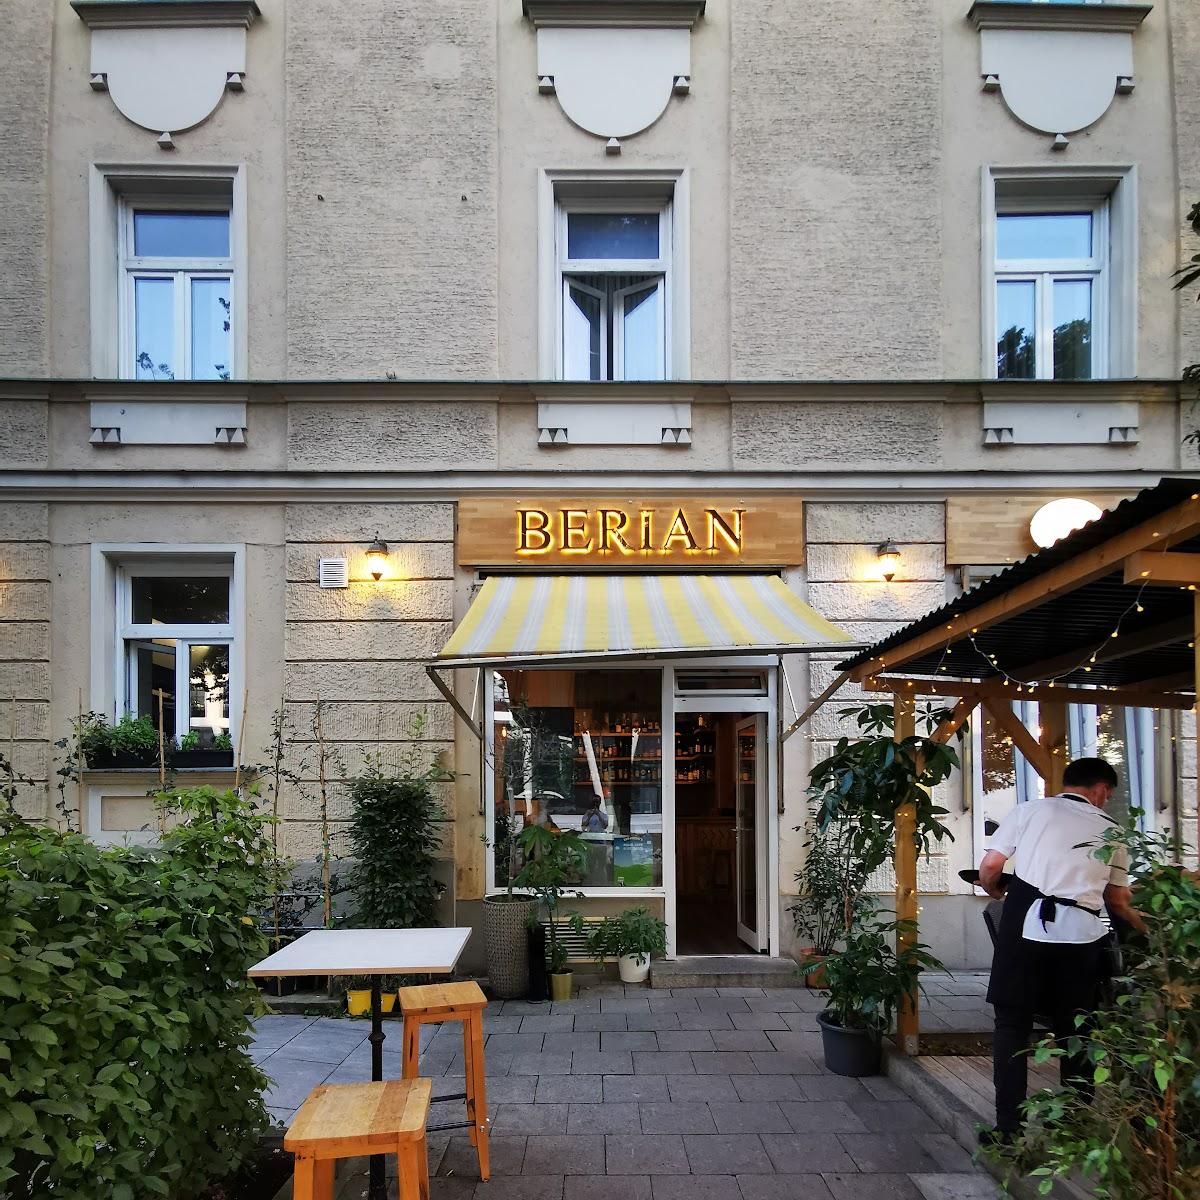 Restaurant "BERIAN Restaurant" in München